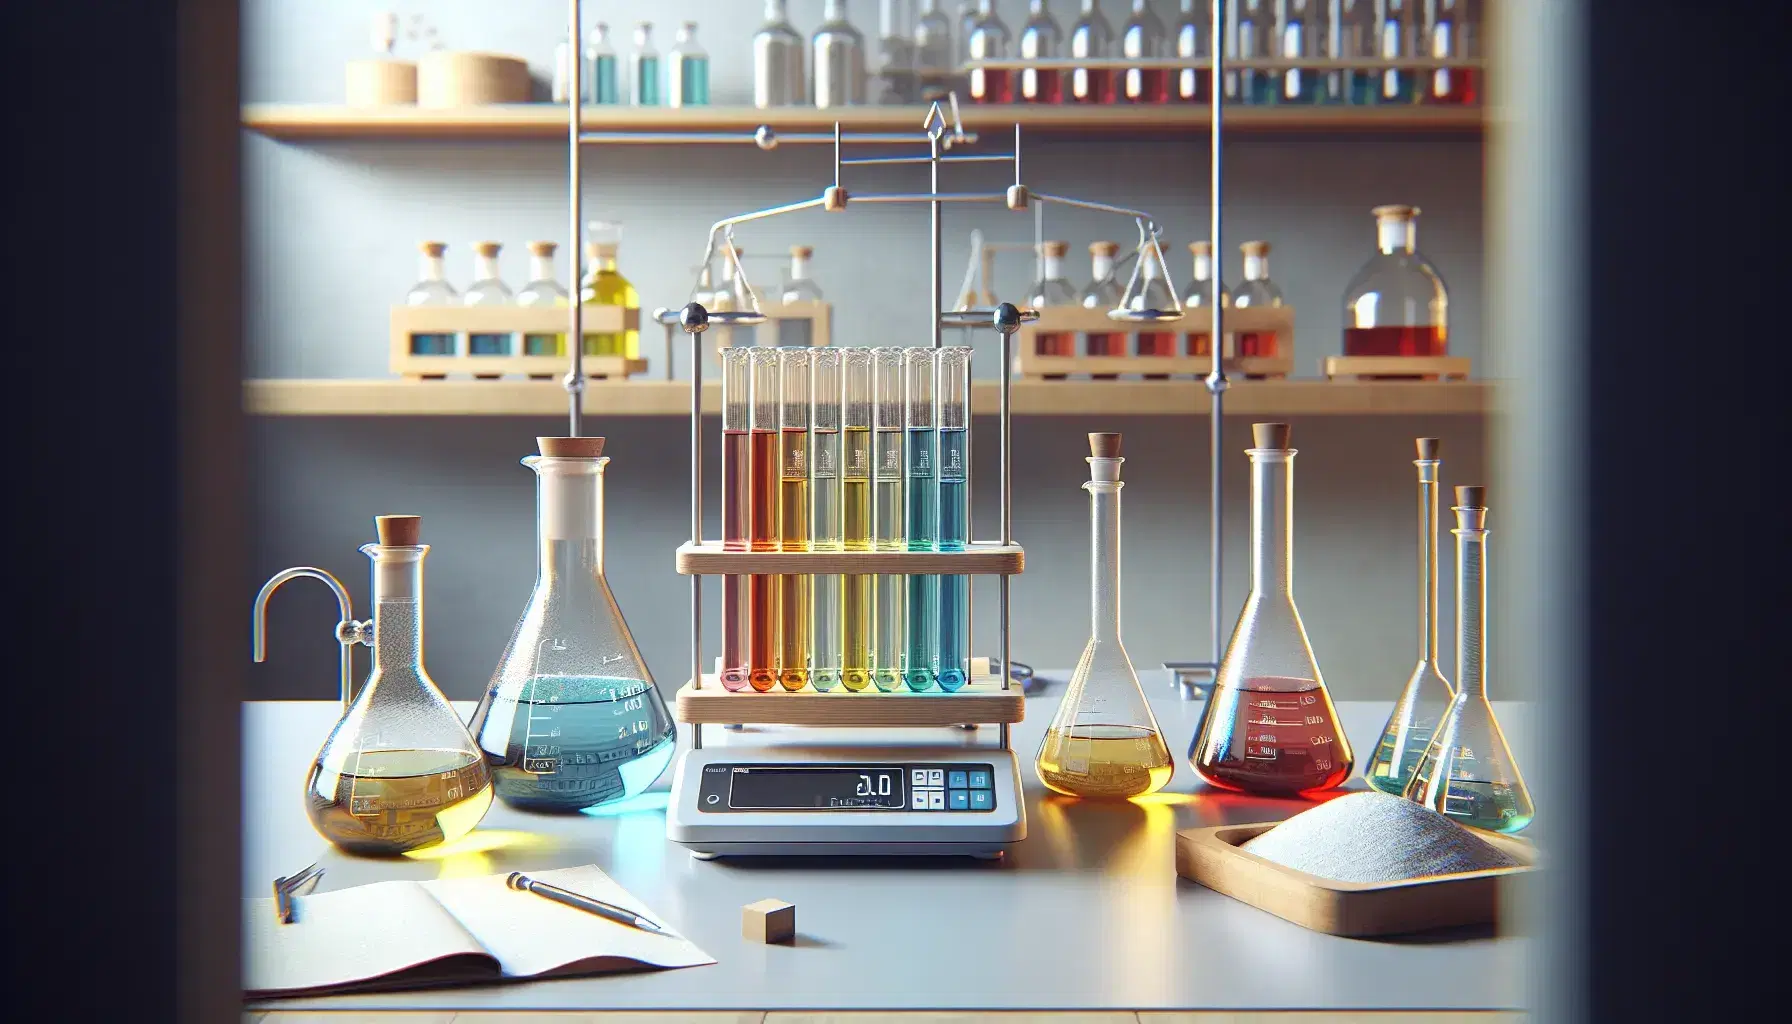 Mesa de laboratorio con Erlenmeyers de soluciones azul, amarilla y roja, tubos de ensayo con líquidos de verde a naranja, balanza analítica y polvo blanco.